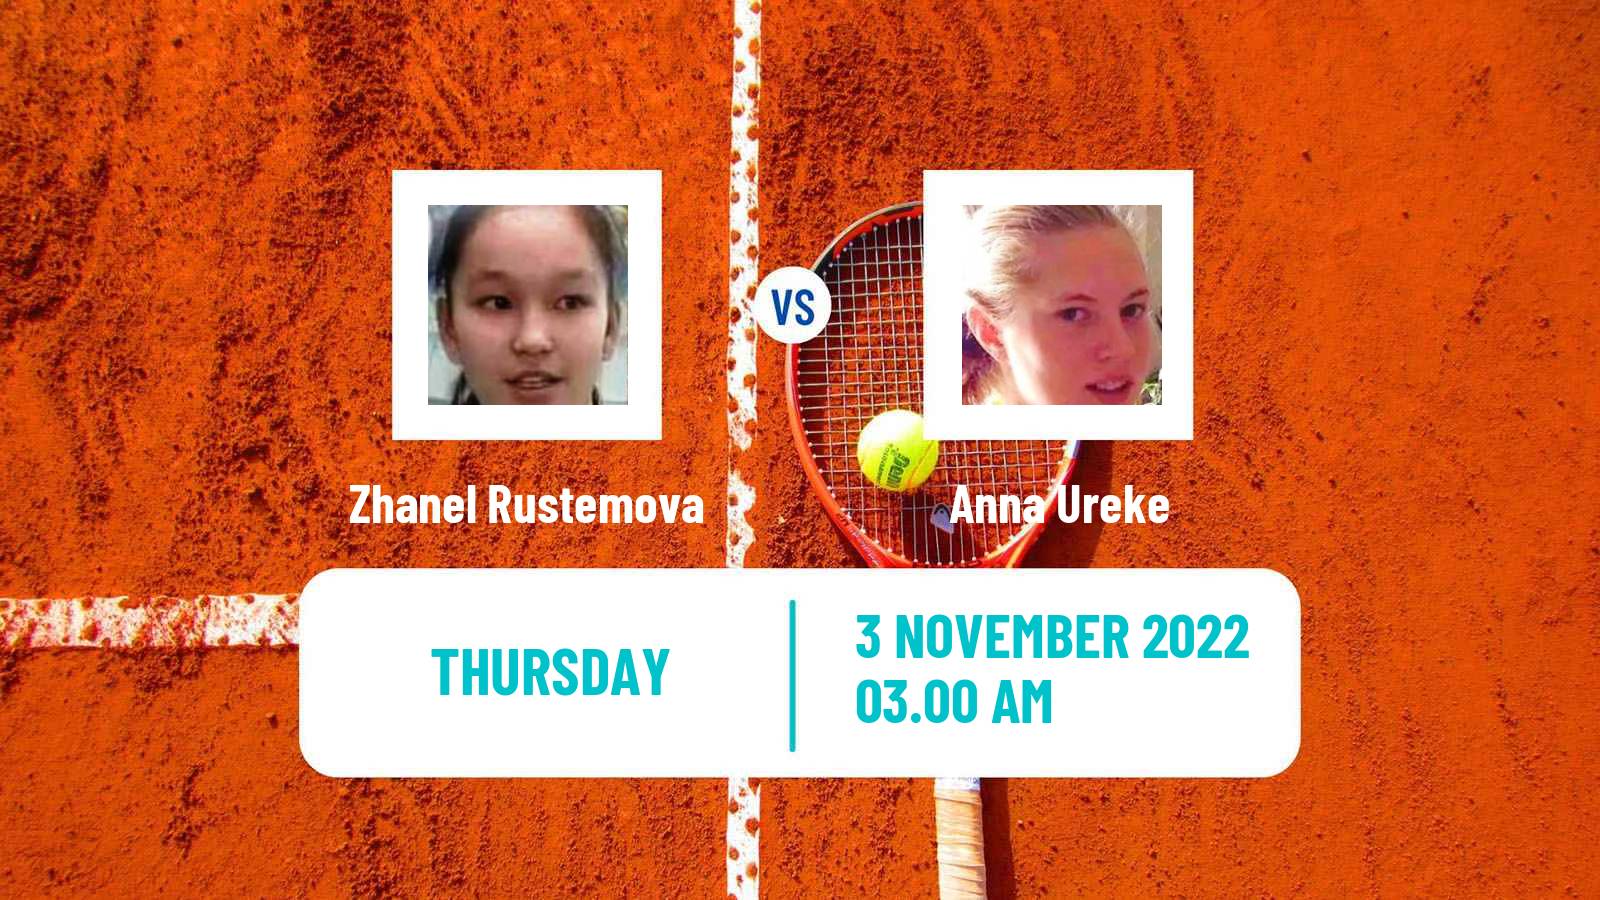 Tennis ITF Tournaments Zhanel Rustemova - Anna Ureke